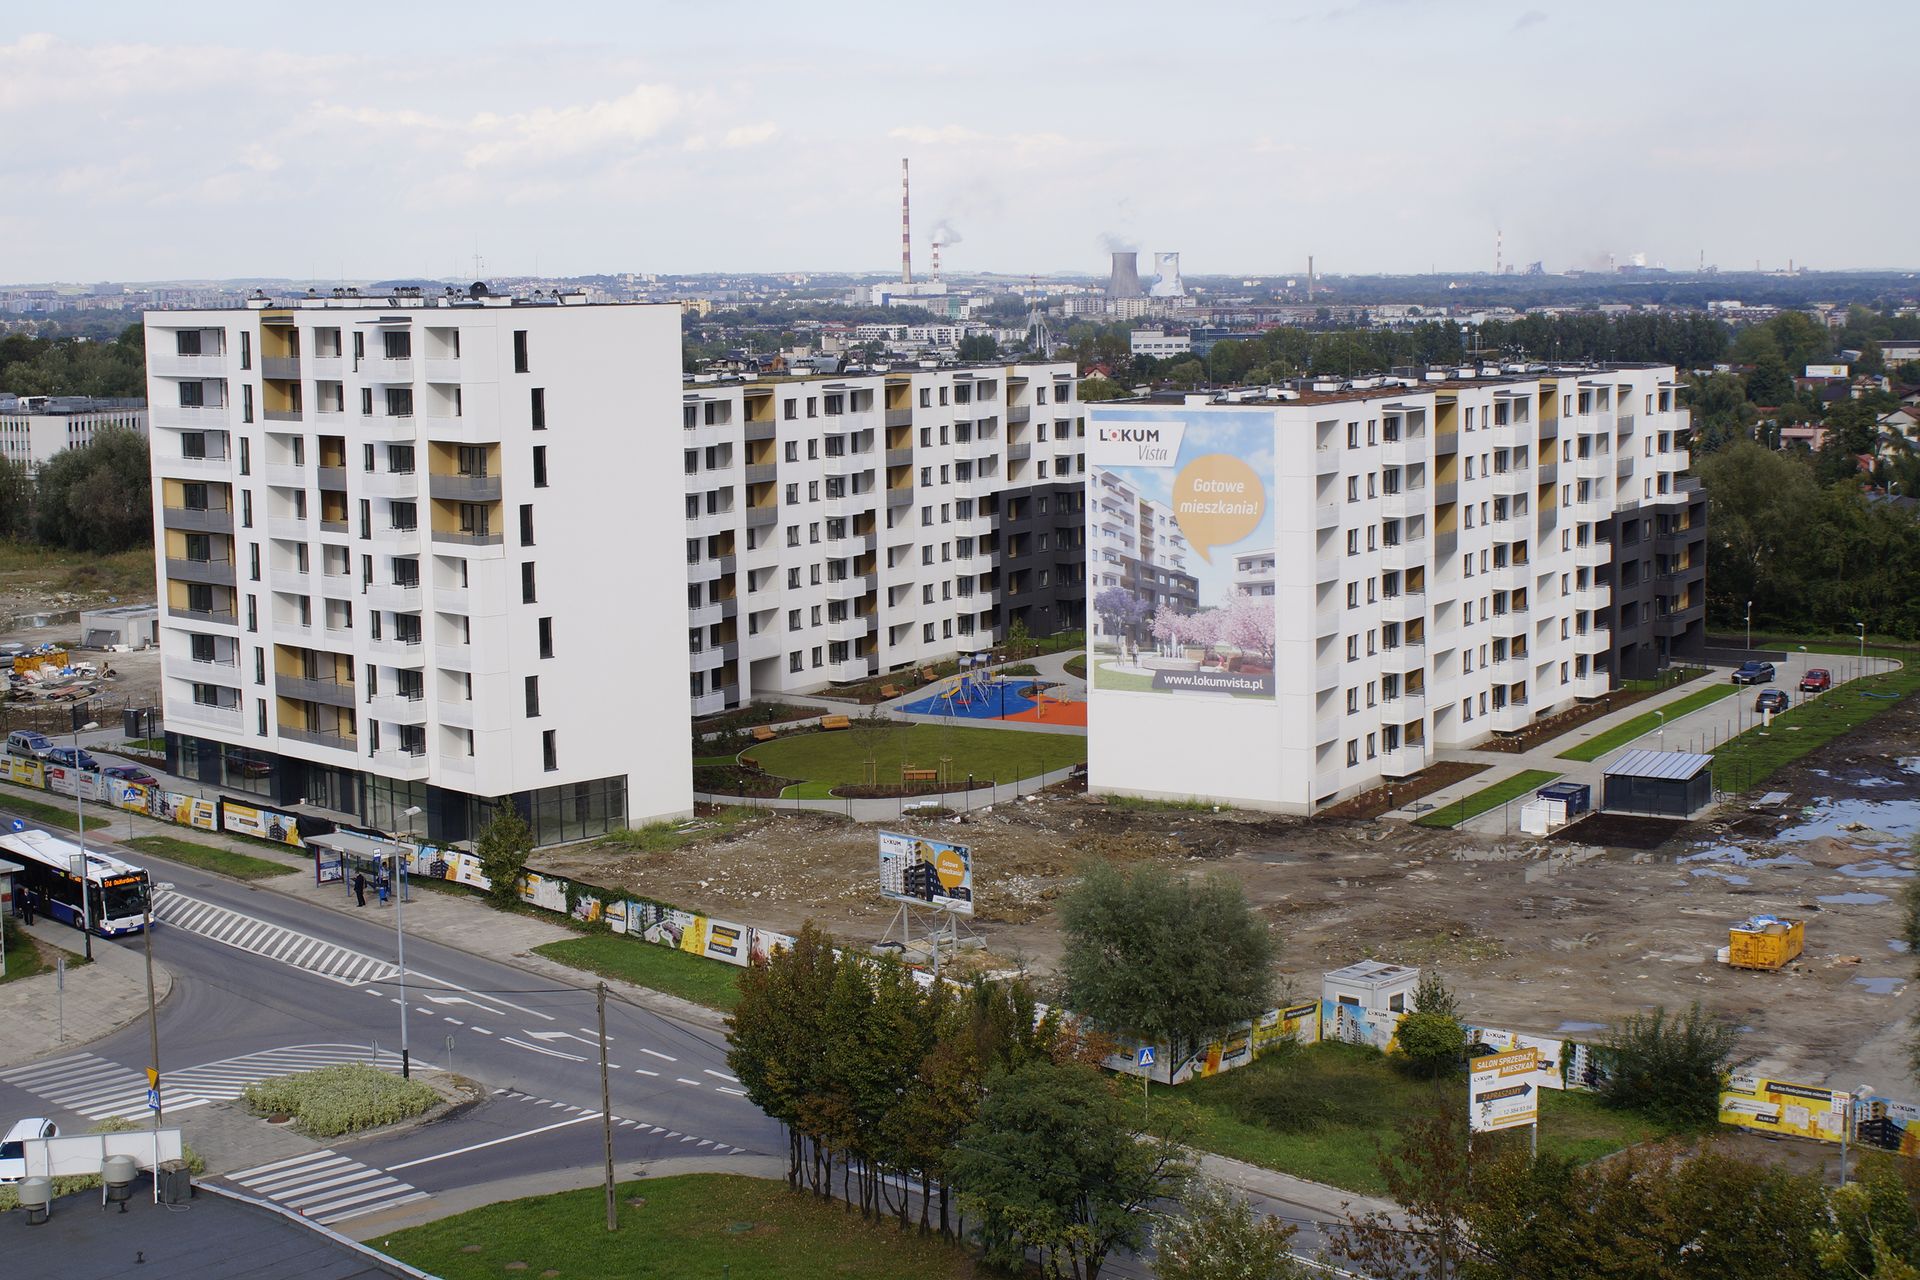  II etap osiedla Lokum Vista w Krakowie w sprzedaży